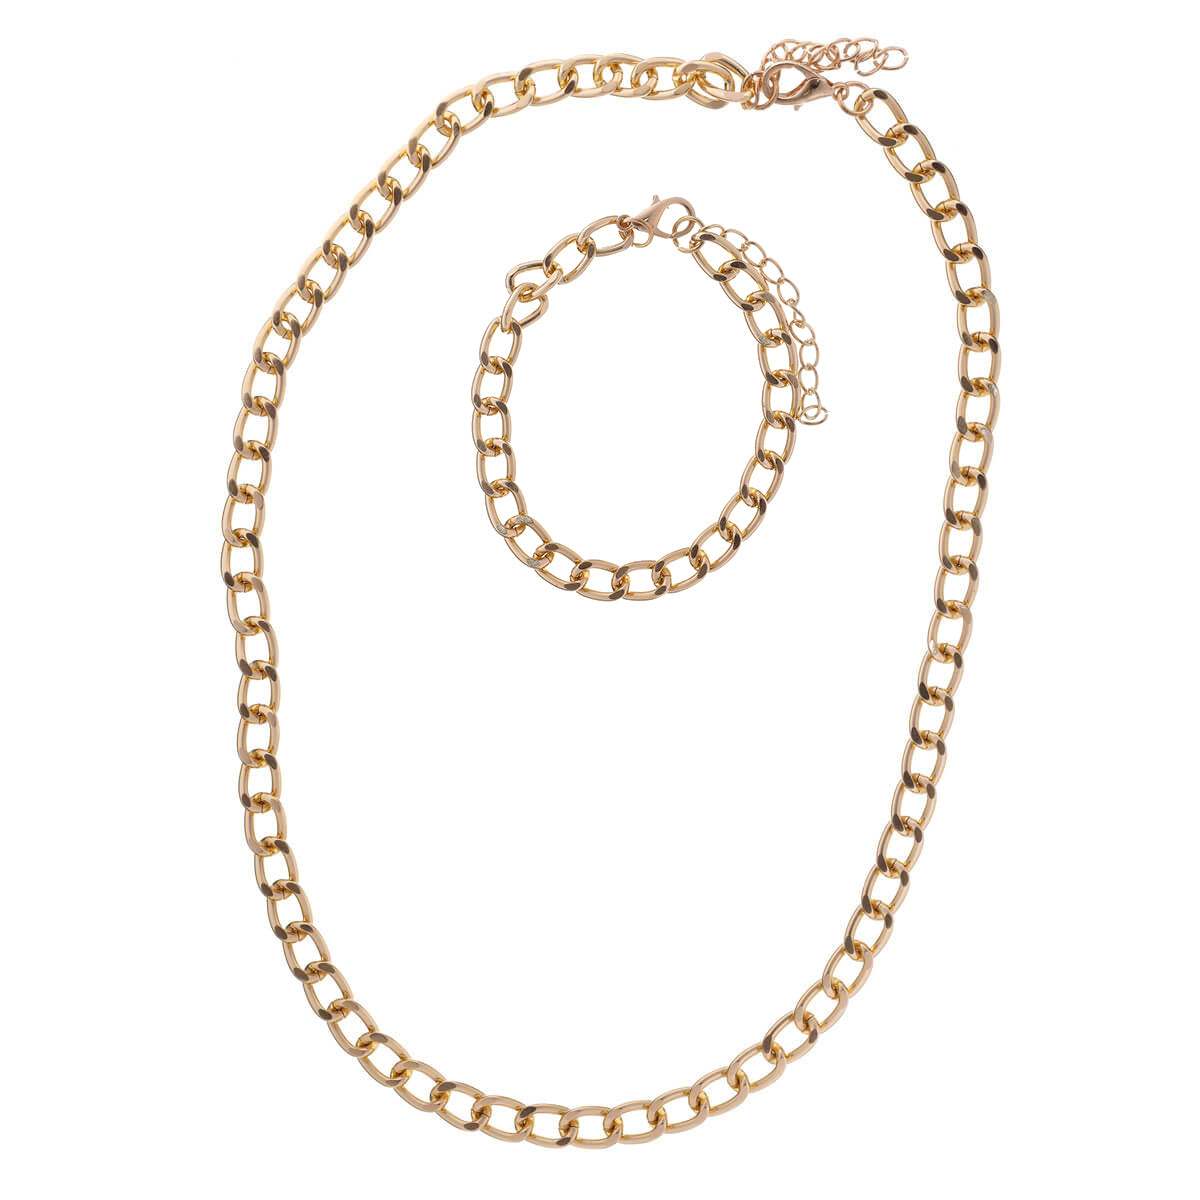 Armor chain necklace + bracelet